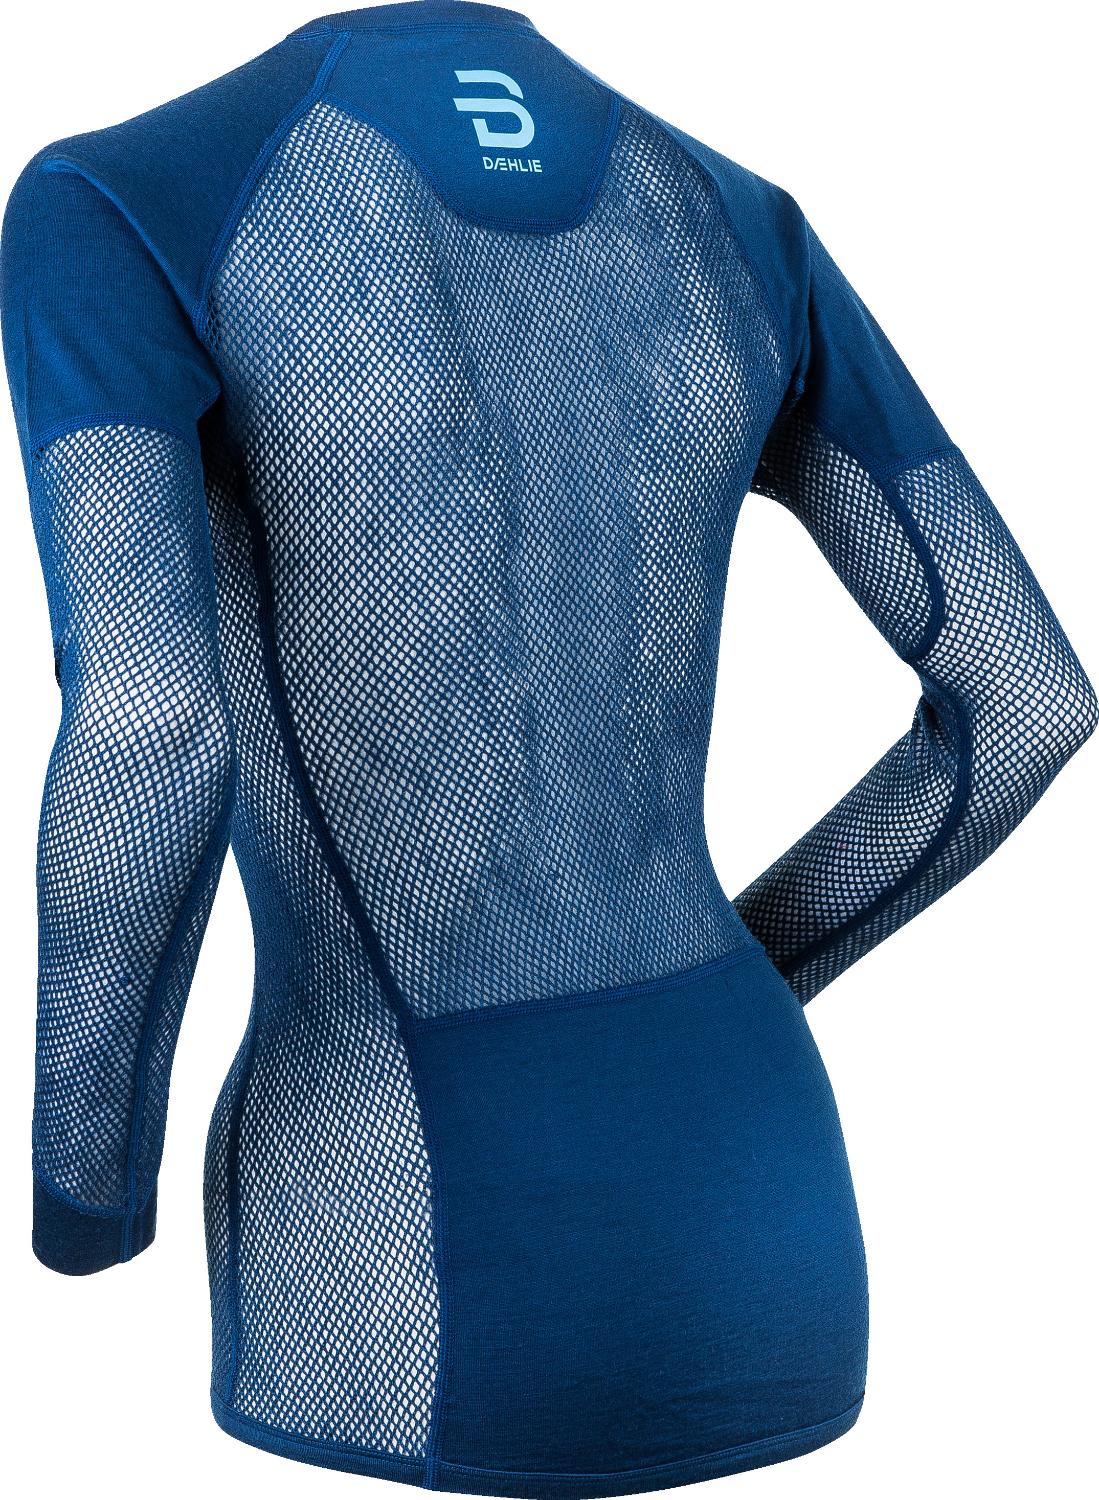 Футболка с длинным рукавом беговая Bjorn Daehlie 2020-21 Airnet Wool for women Estate Blue